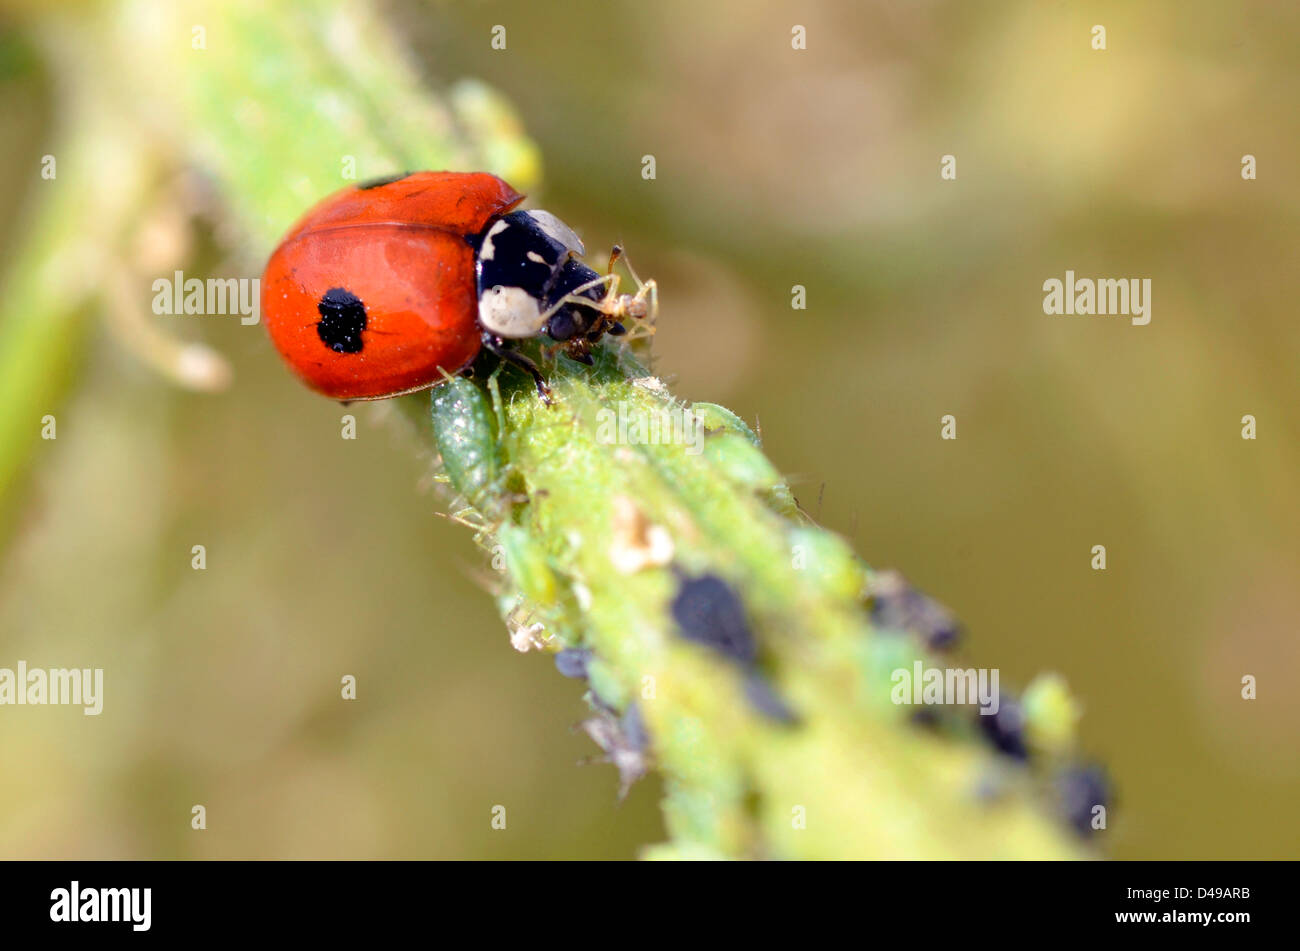 Macro of ladybug (Adalia bipunctata) eating aphids on stem Stock Photo